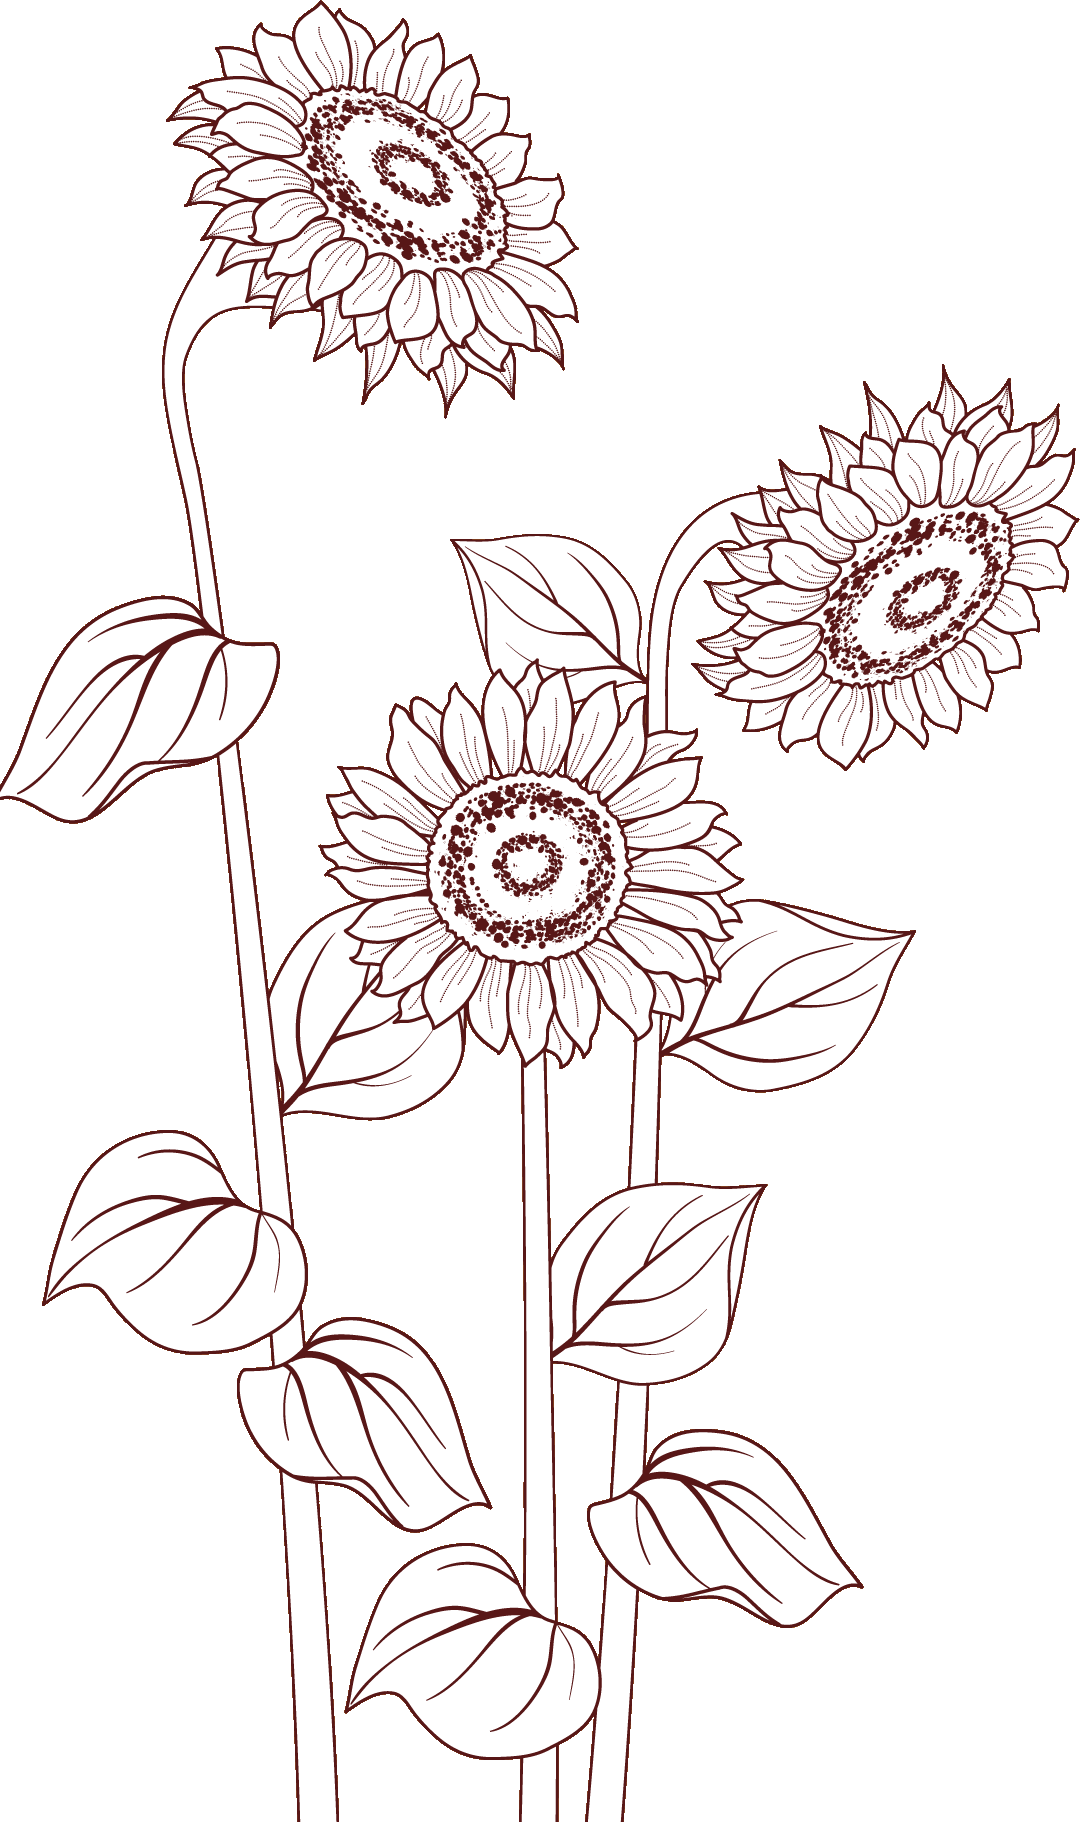 花のイラスト フリー素材 白黒 モノクロno 035 ひまわり 透過色